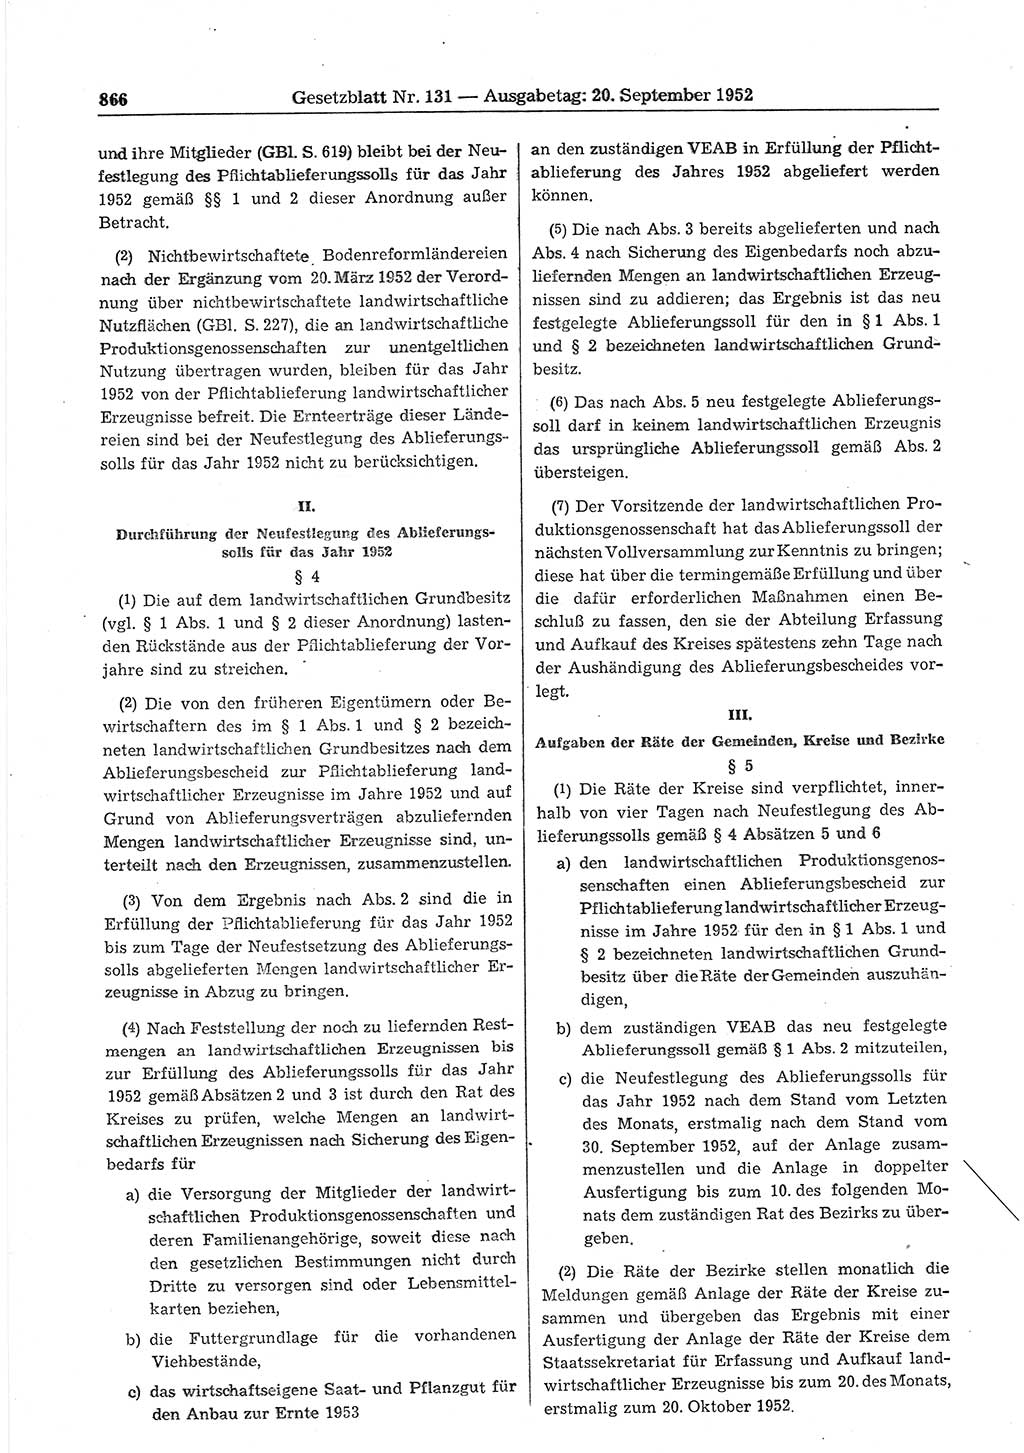 Gesetzblatt (GBl.) der Deutschen Demokratischen Republik (DDR) 1952, Seite 866 (GBl. DDR 1952, S. 866)